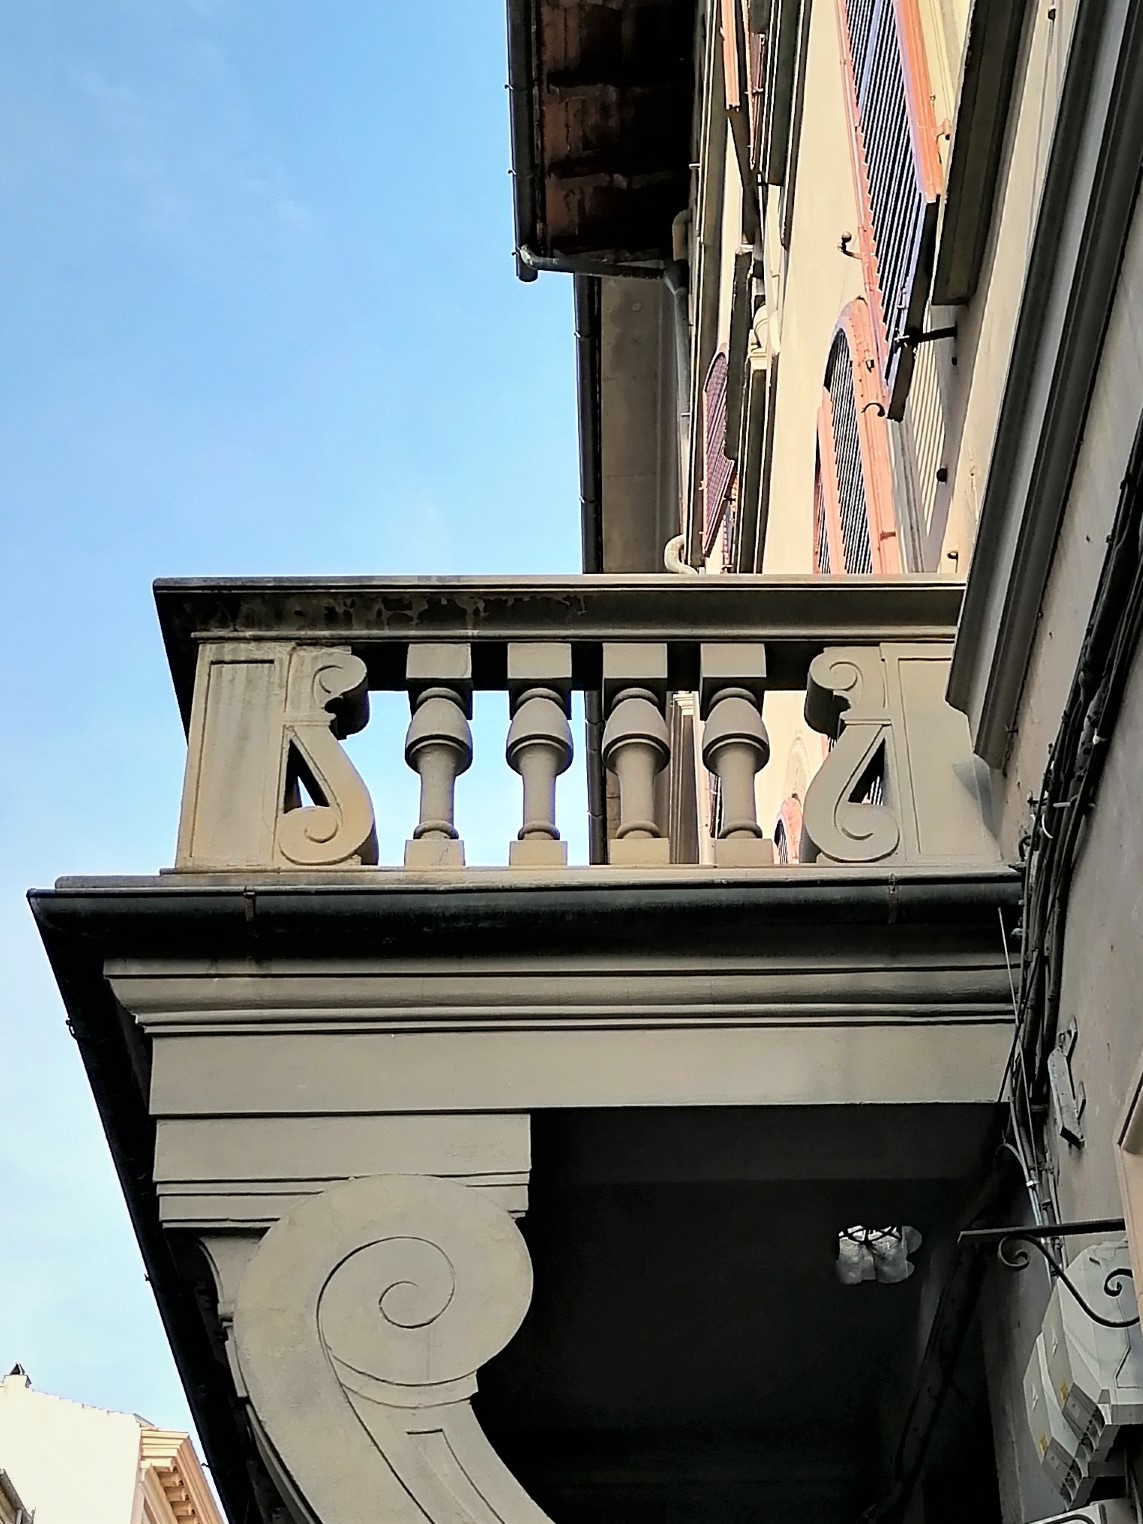 Balkon na odwrót, ciekawostki Florencji